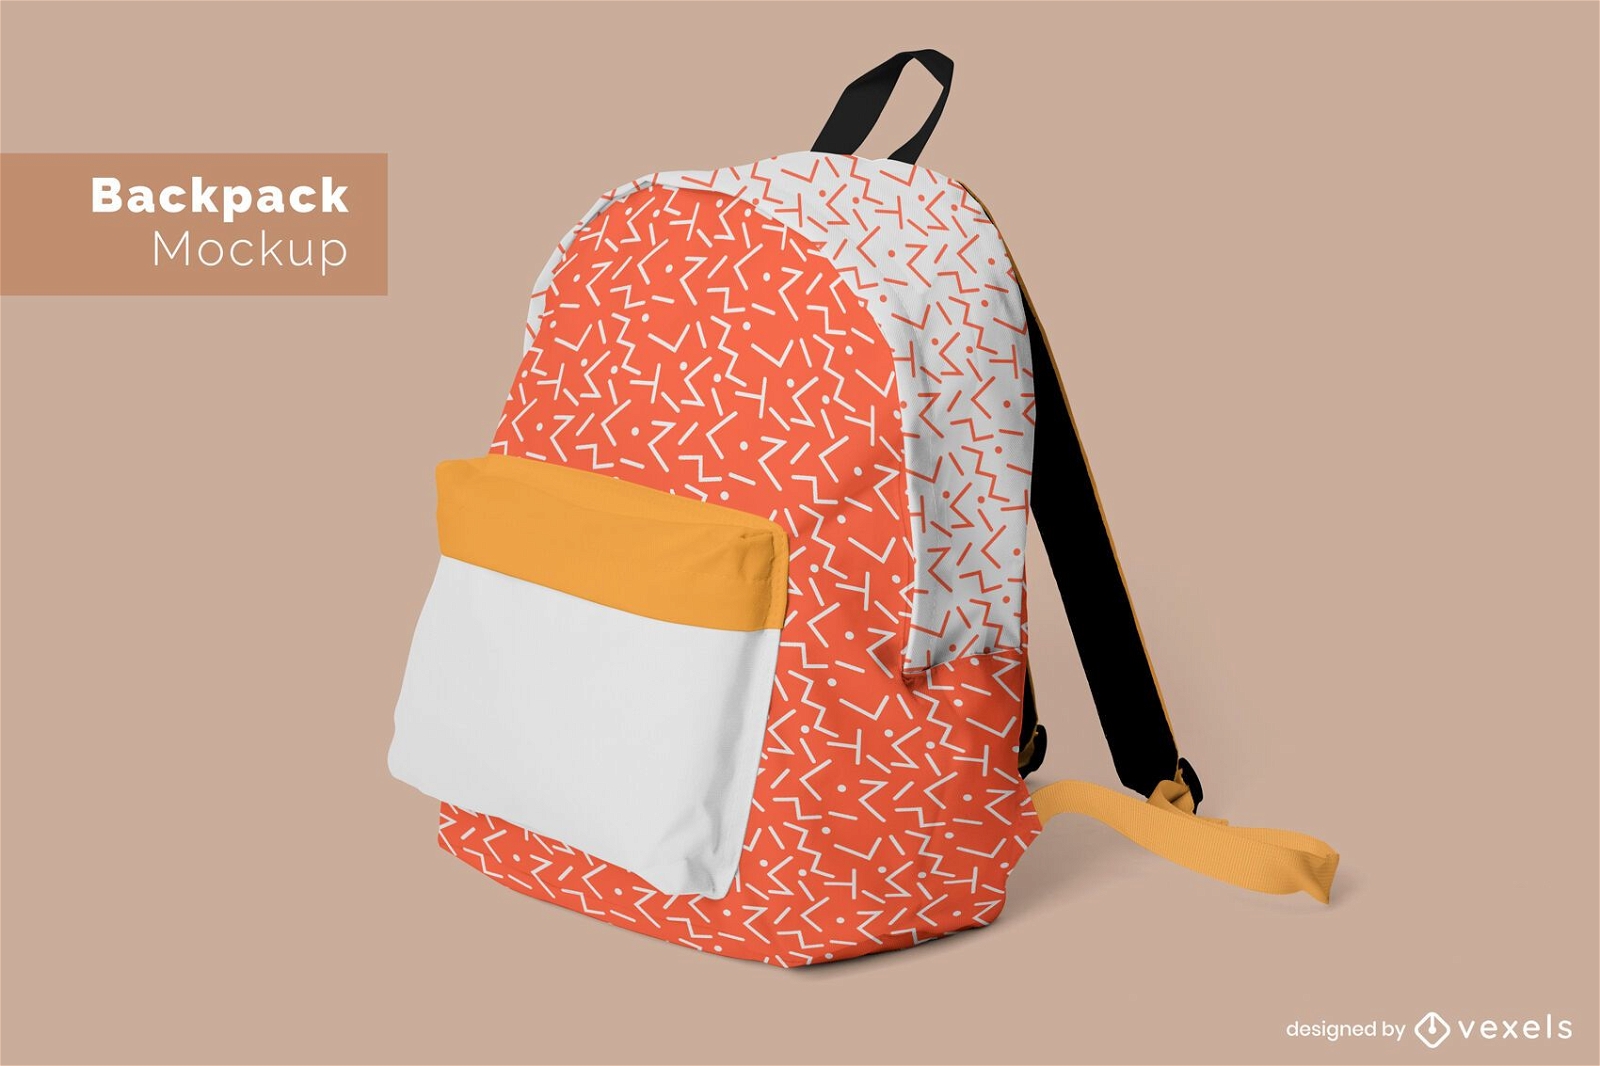 Backpack pattern mockup